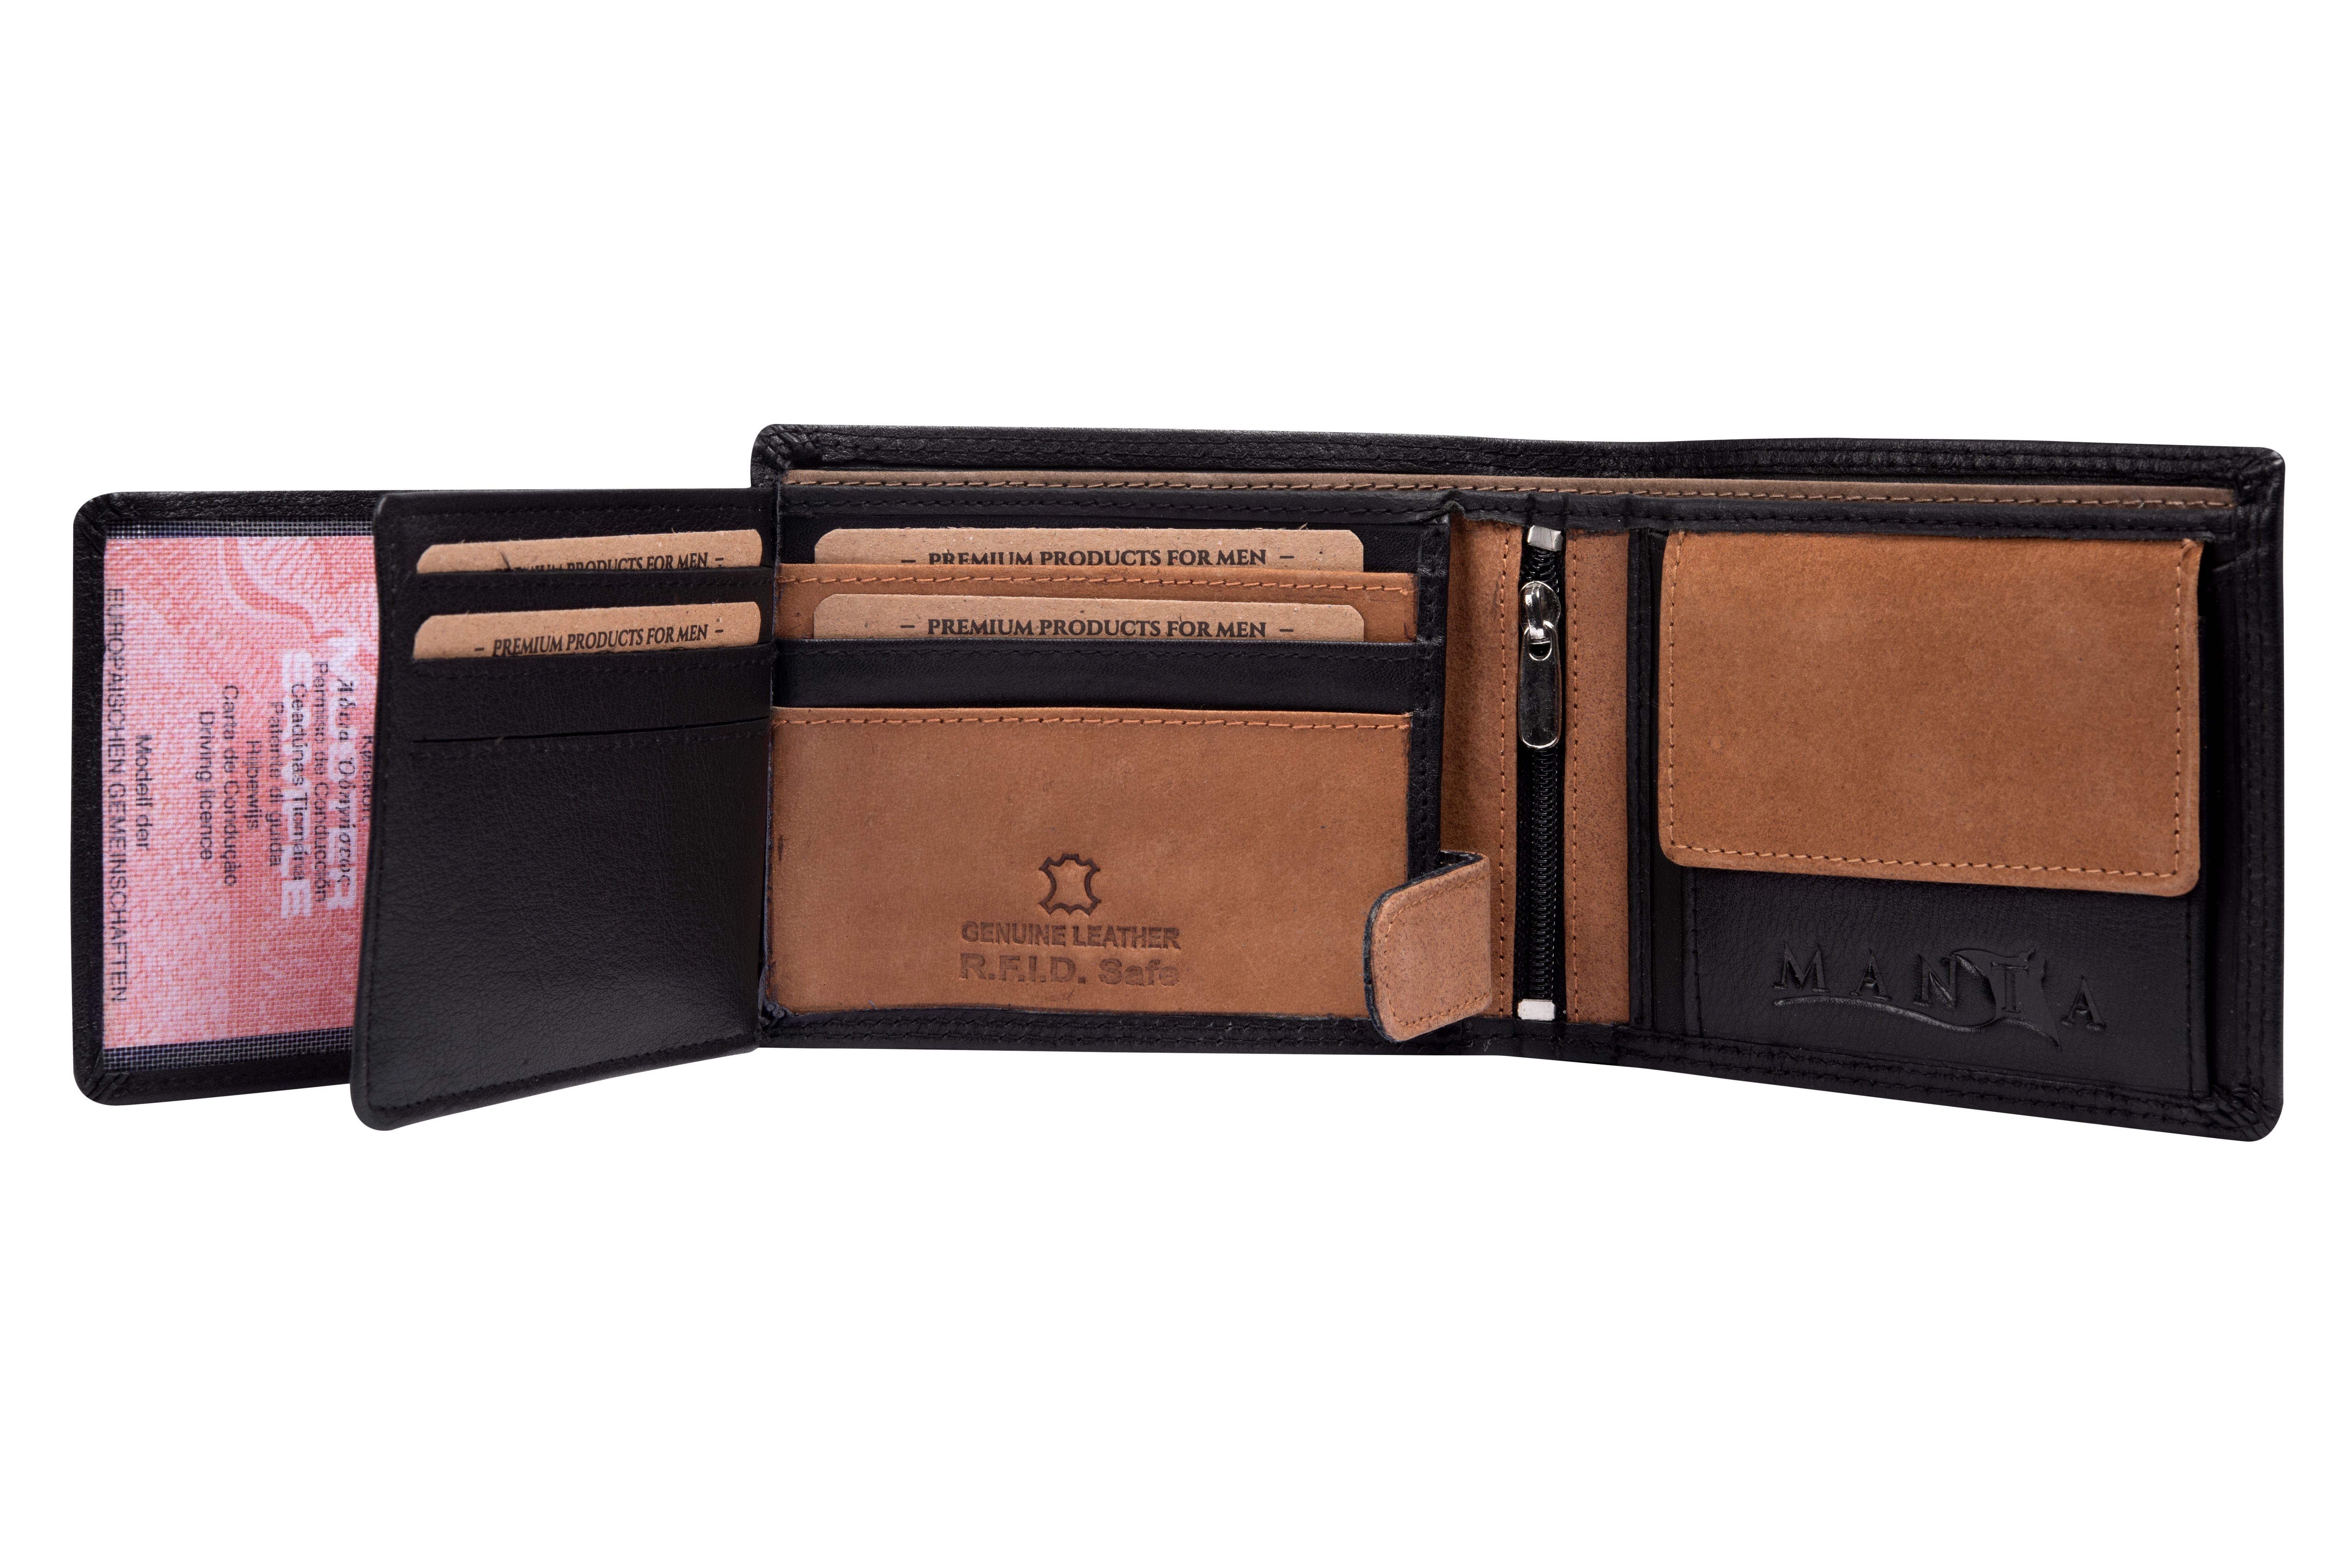 Brieftasche, RFID Echtes aus MANTA + Safe Herrengeldbeutel RFID Schutz Geldbörse Leder Black-Brown Echtleder Premium